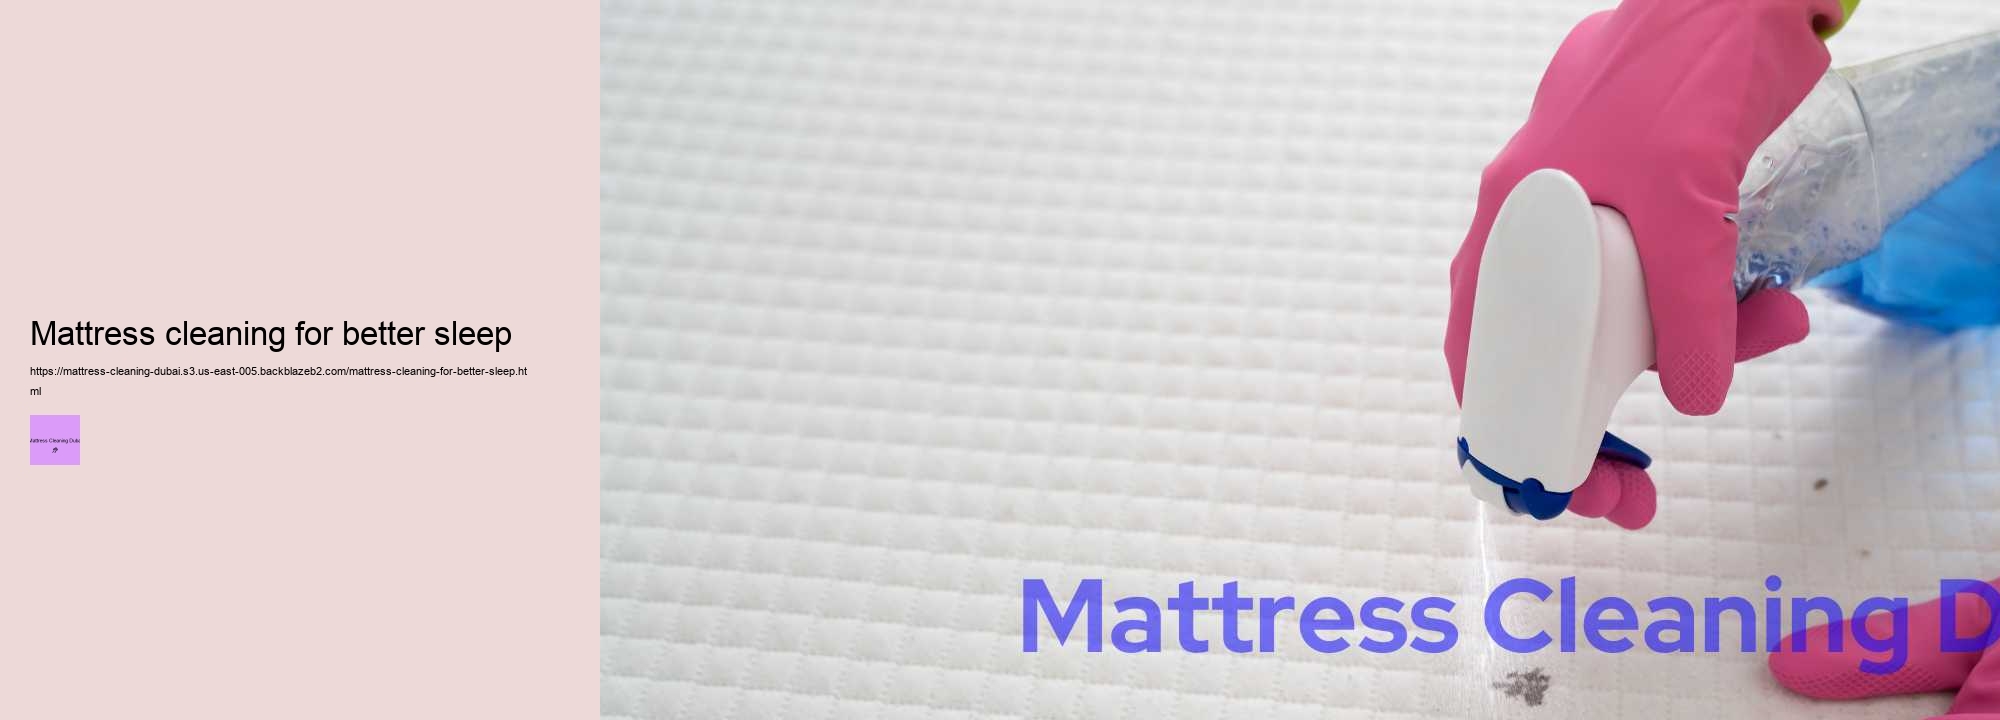 Mattress cleaning for better sleep